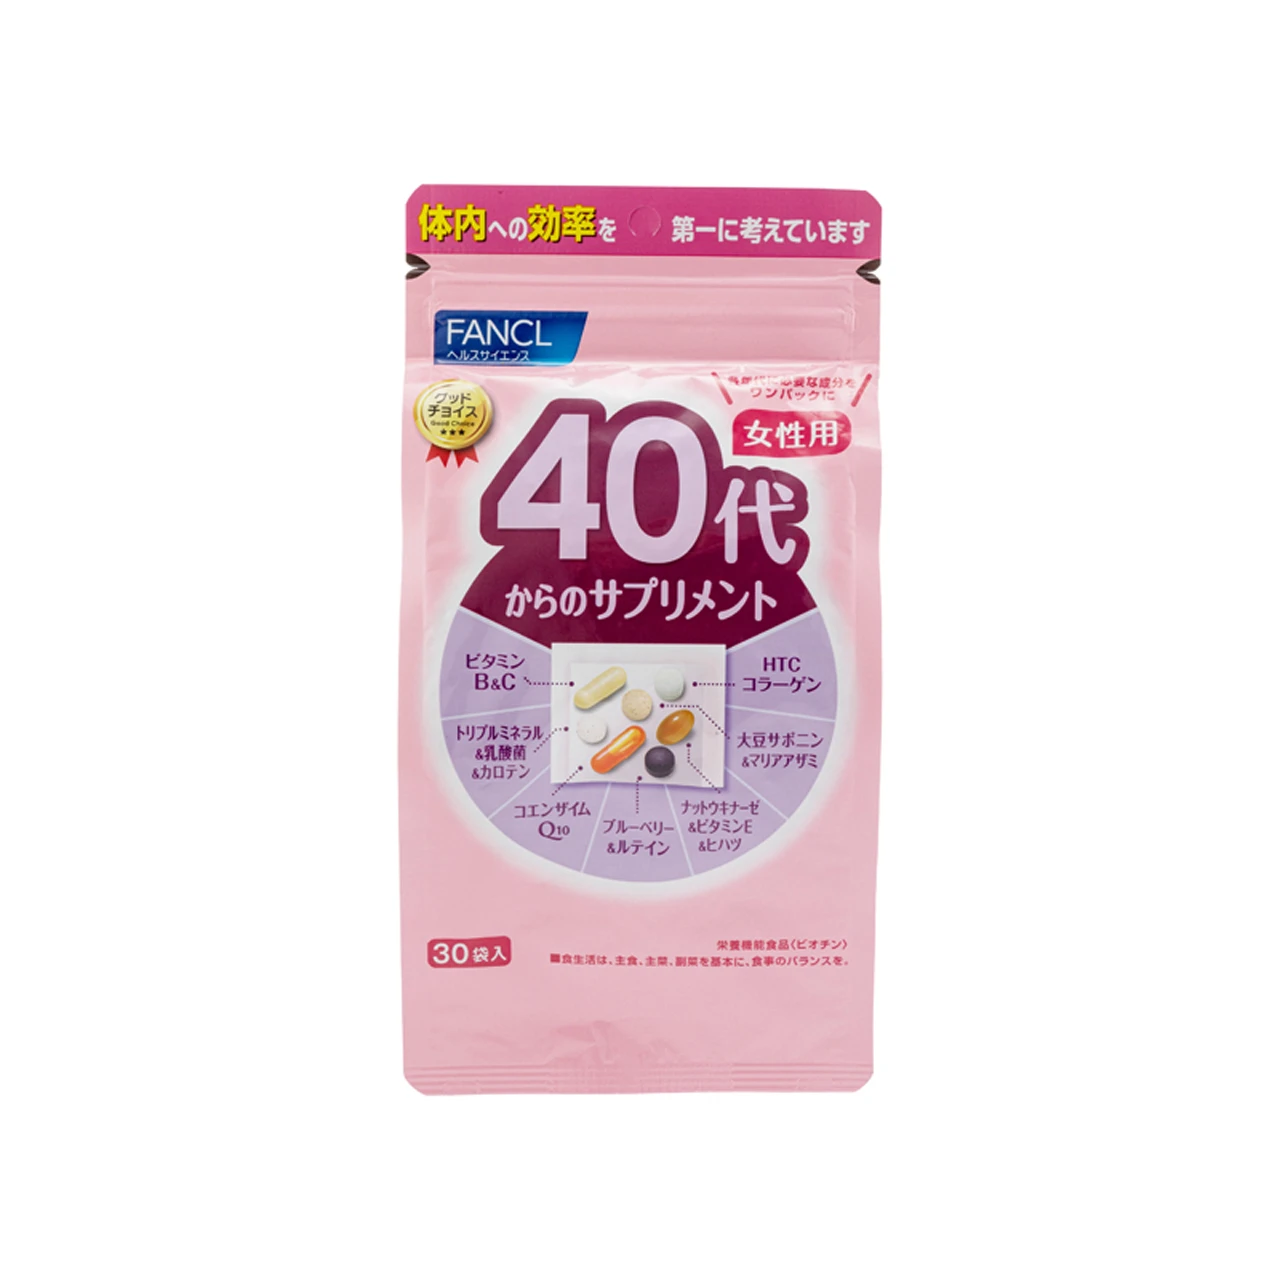 FANCL | Fancl 女士40代综合营养素 30包裝,商家Yee Collene,价格¥381